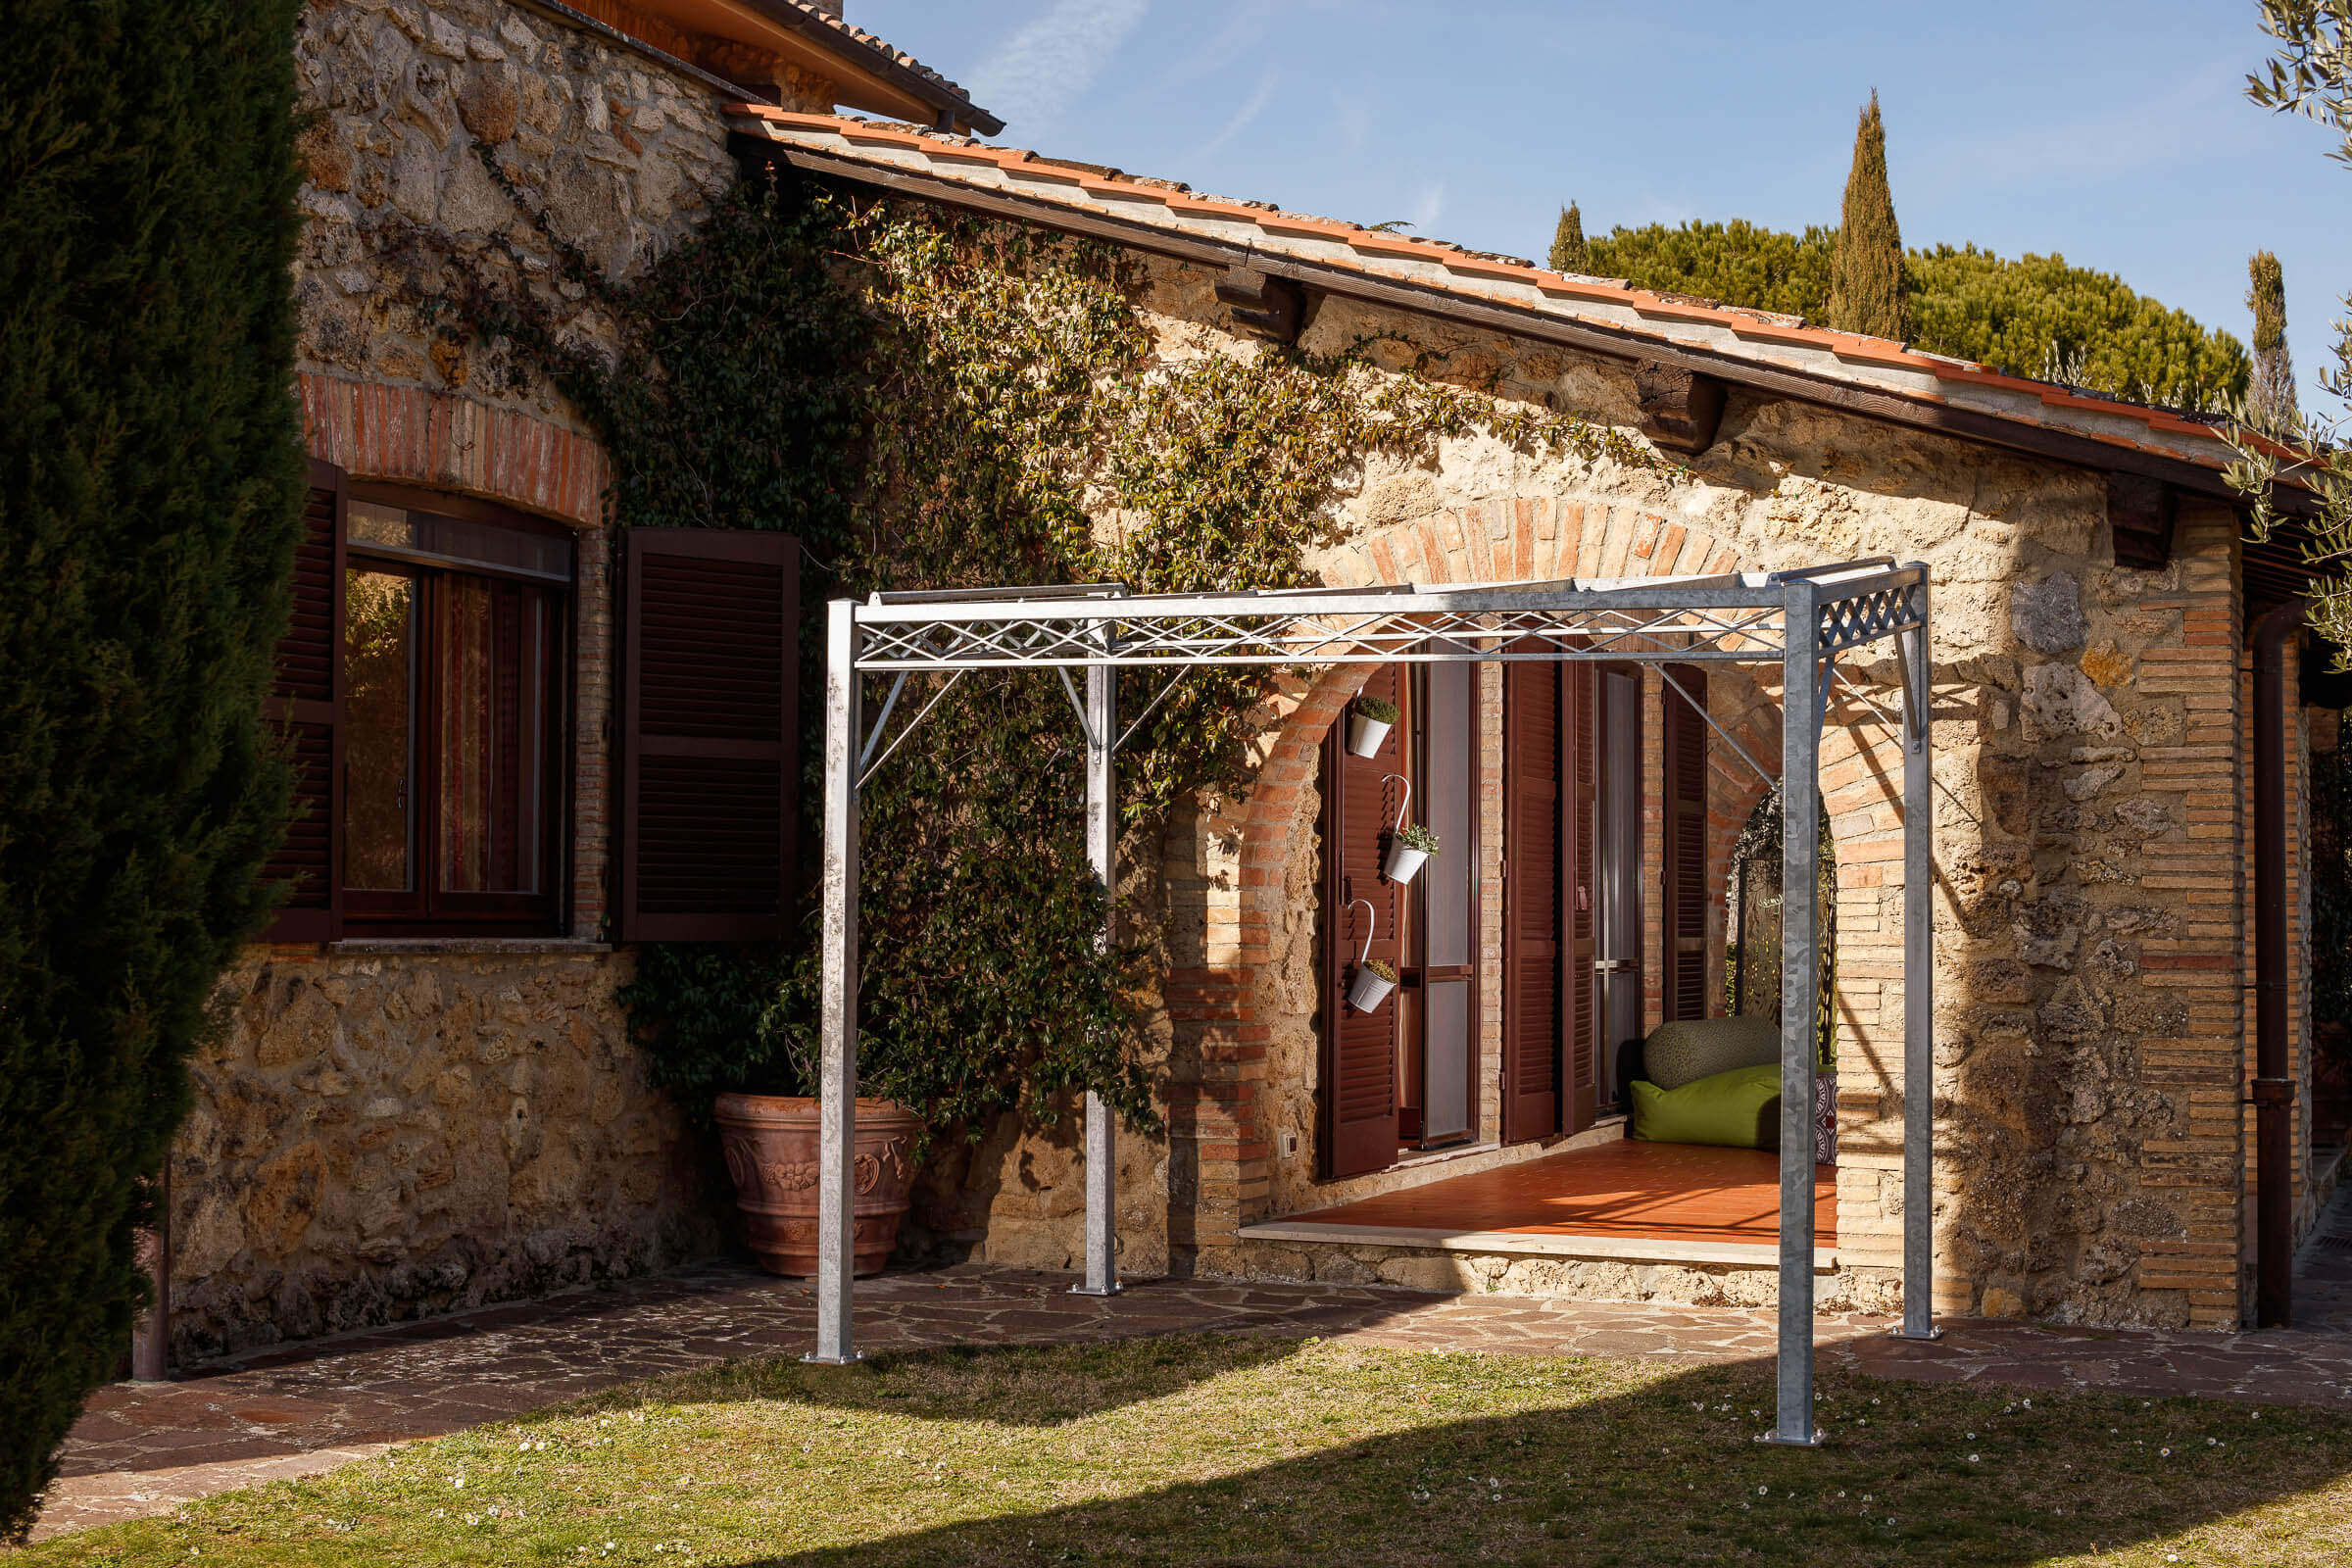 Pergola Ischia in feuerverzinkter Ausführung an einer terrasse angelehnt